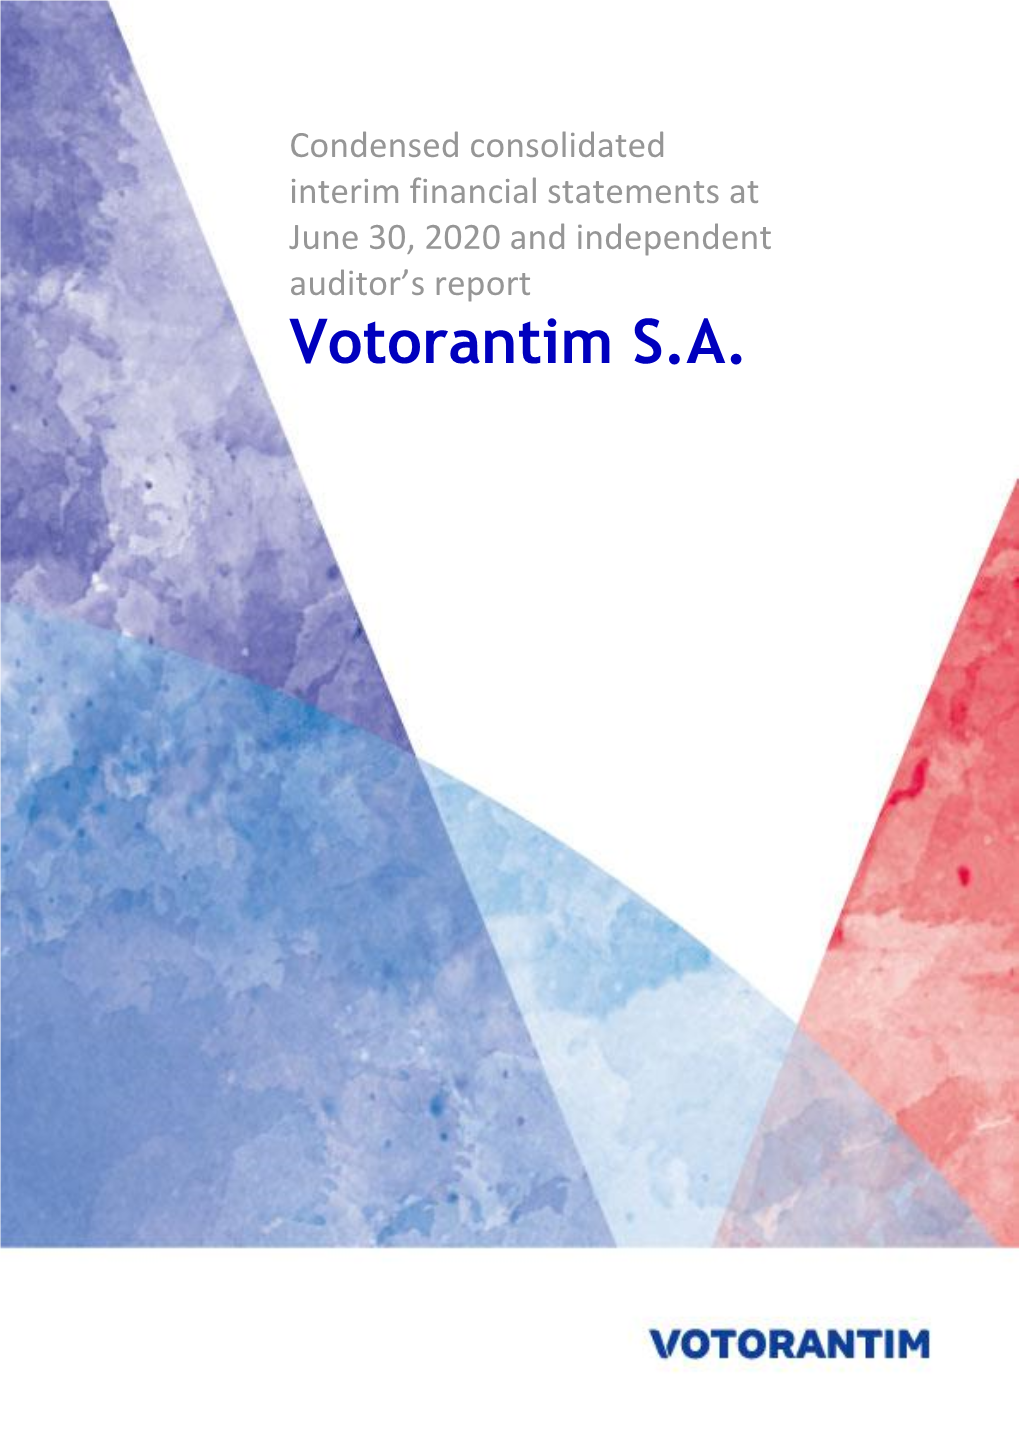 Votorantim S.A. (A Free Translation of the Original in Portuguese)